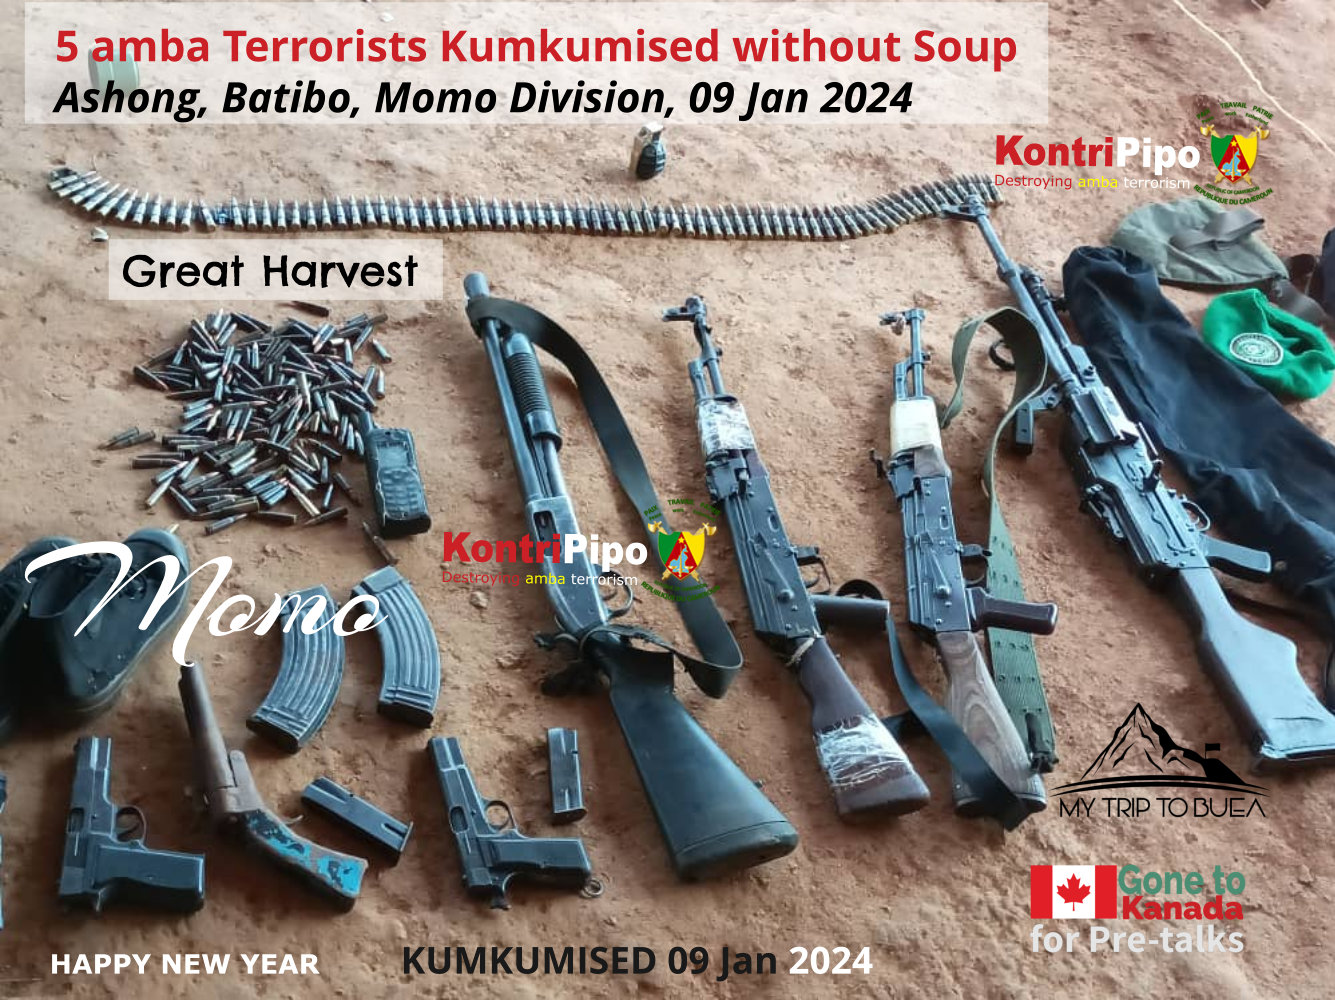 5 amba terrorists kumkumised in Ashong, Batibo, Momo 07 Jan 2024 - ADF is in Tears - Haha